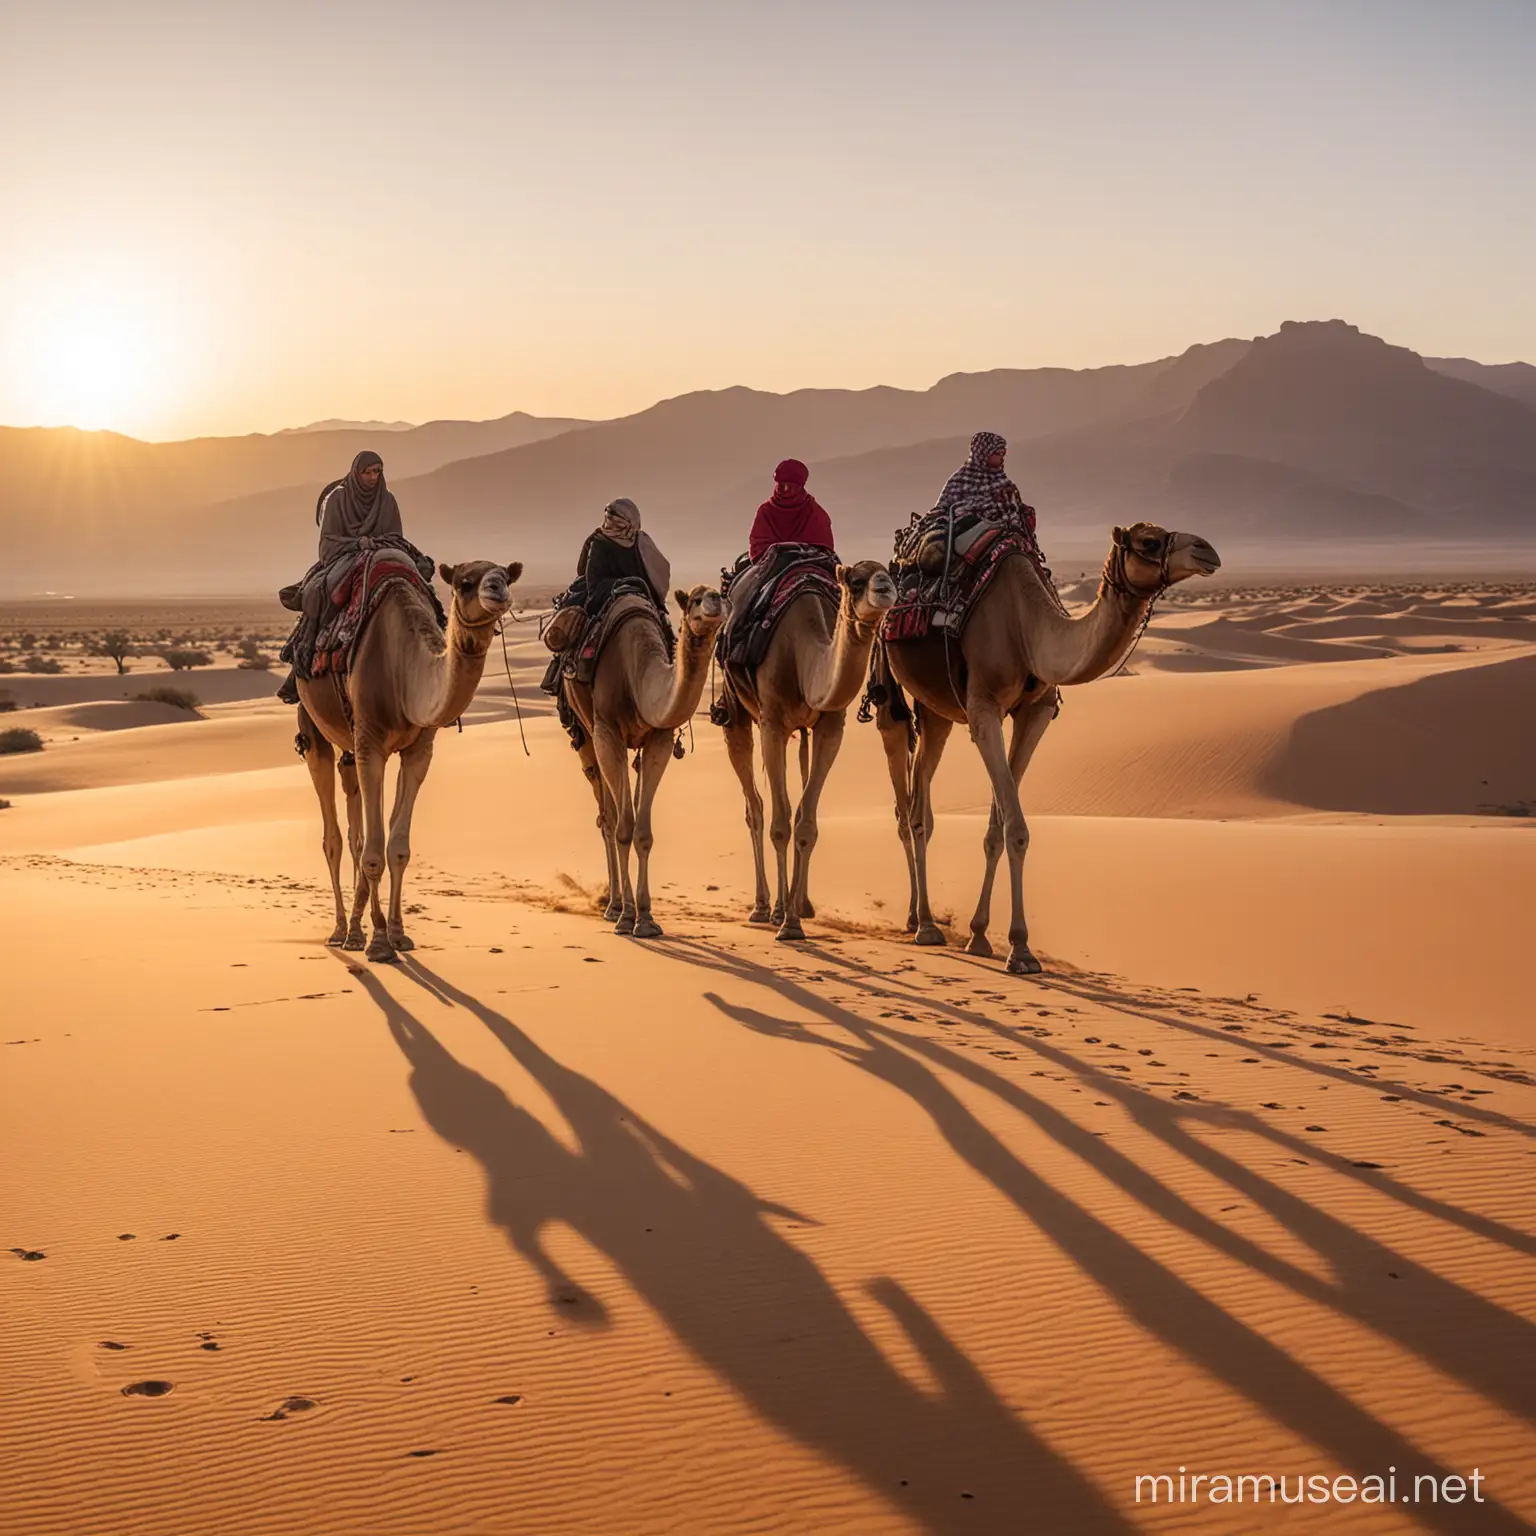 Nomadic Travelers with Camels at Sunset Desert Landscape